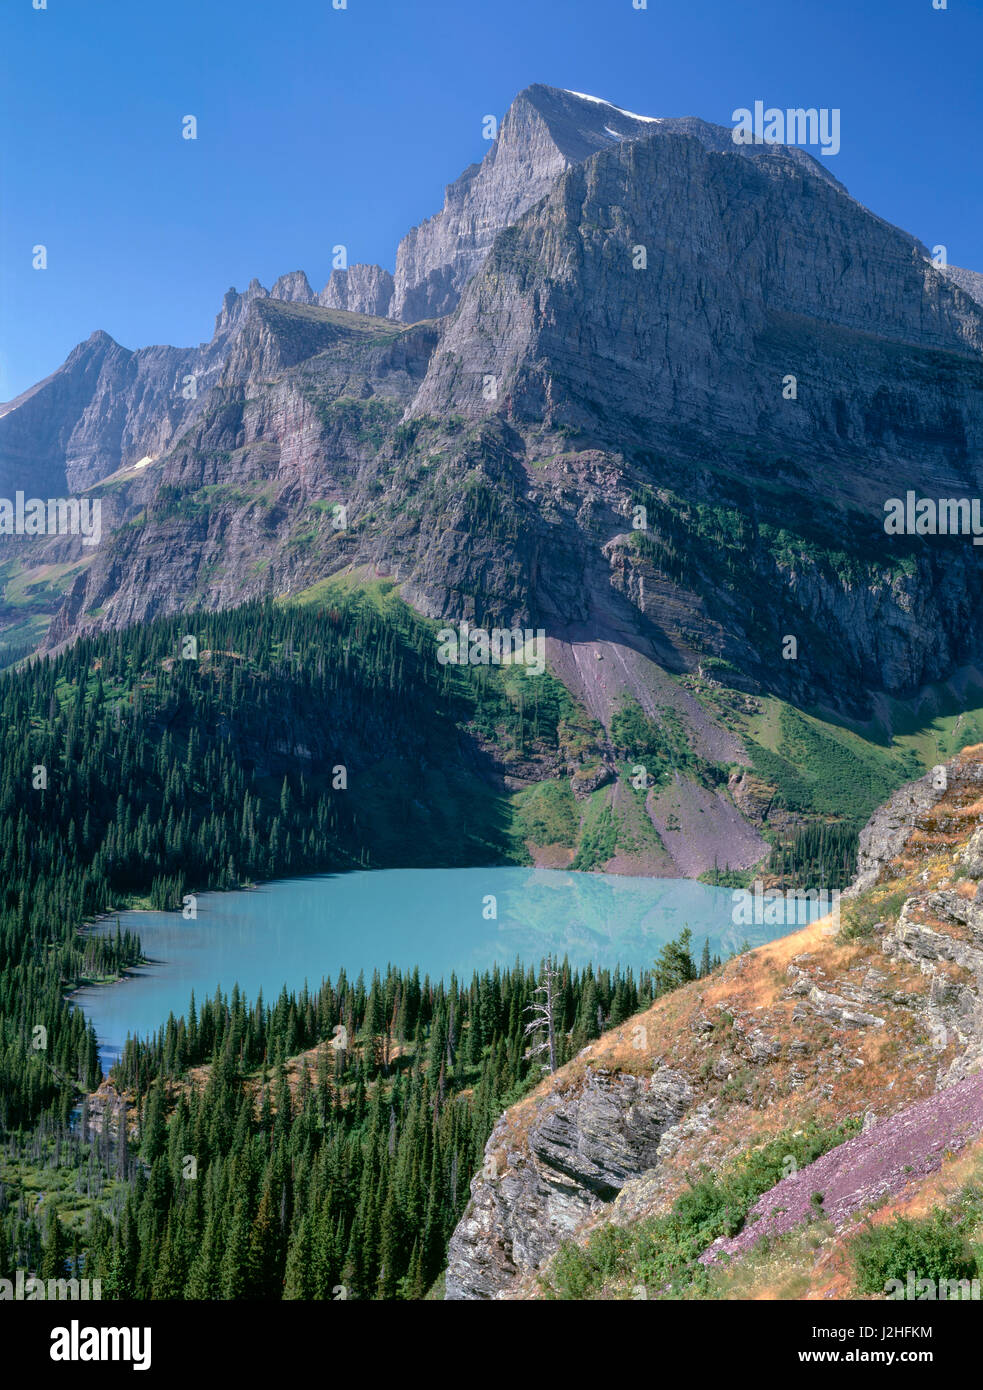 USA, Montana, Glacier National Park, Mount Gould et Angel tour d'aile au-dessus du lac Grinnell coloré turquoise par limon glaciaire suspendue dans c'est de l'eau. Tailles disponibles (grand format) Banque D'Images